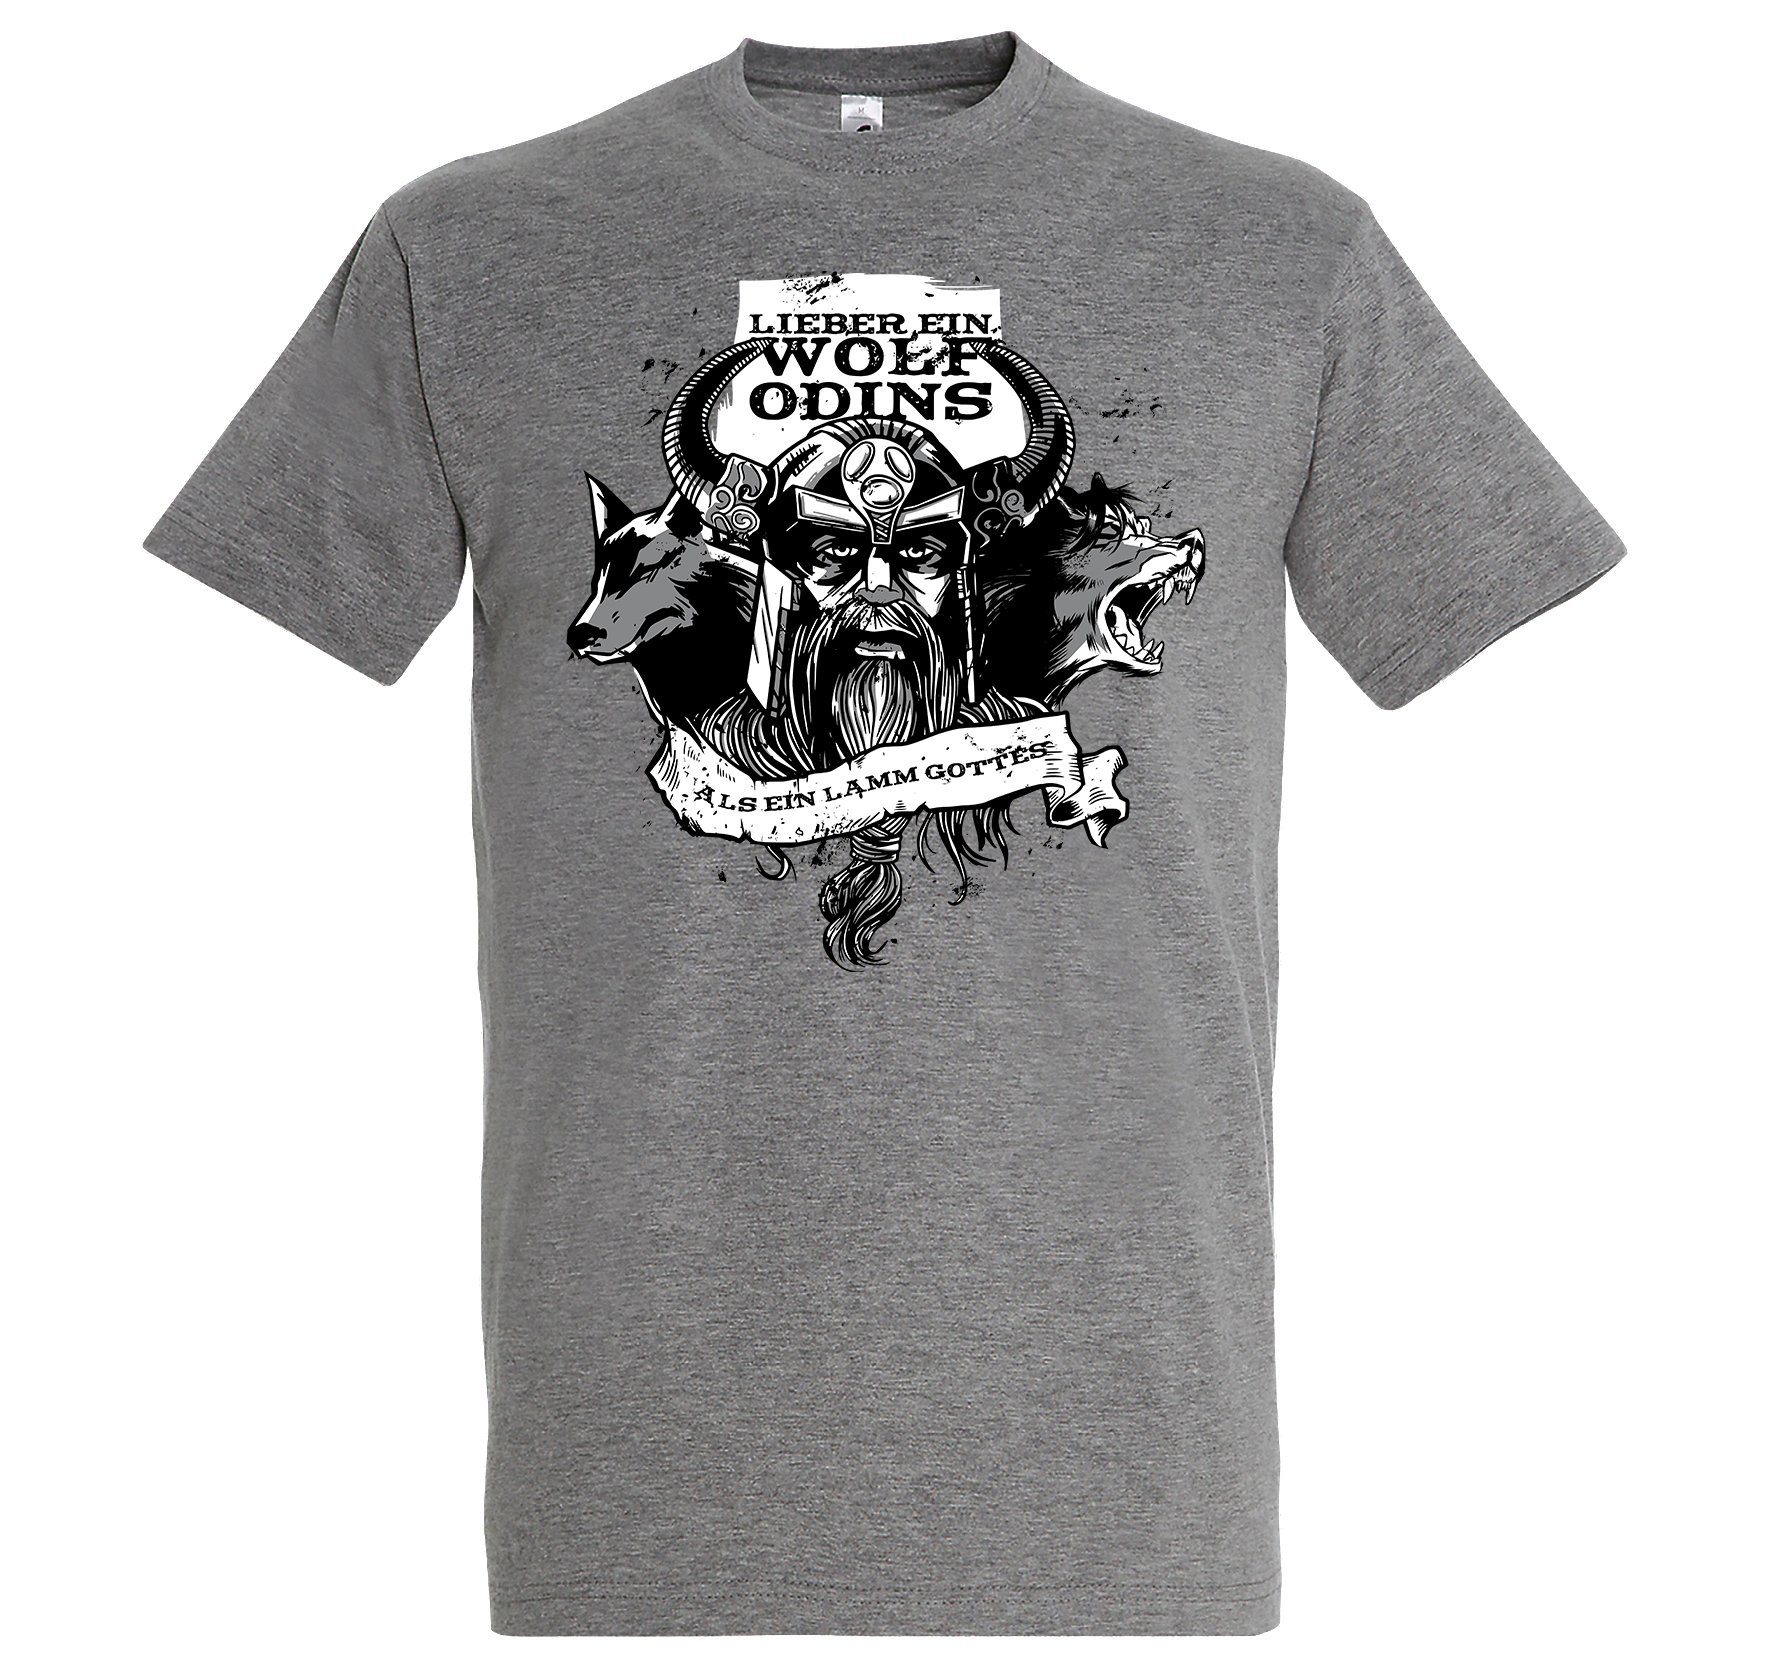 Youth Designz Print-Shirt "Lieber ein Wolf Odins" Herren T-Shirt mit lustigem Spruch Grau